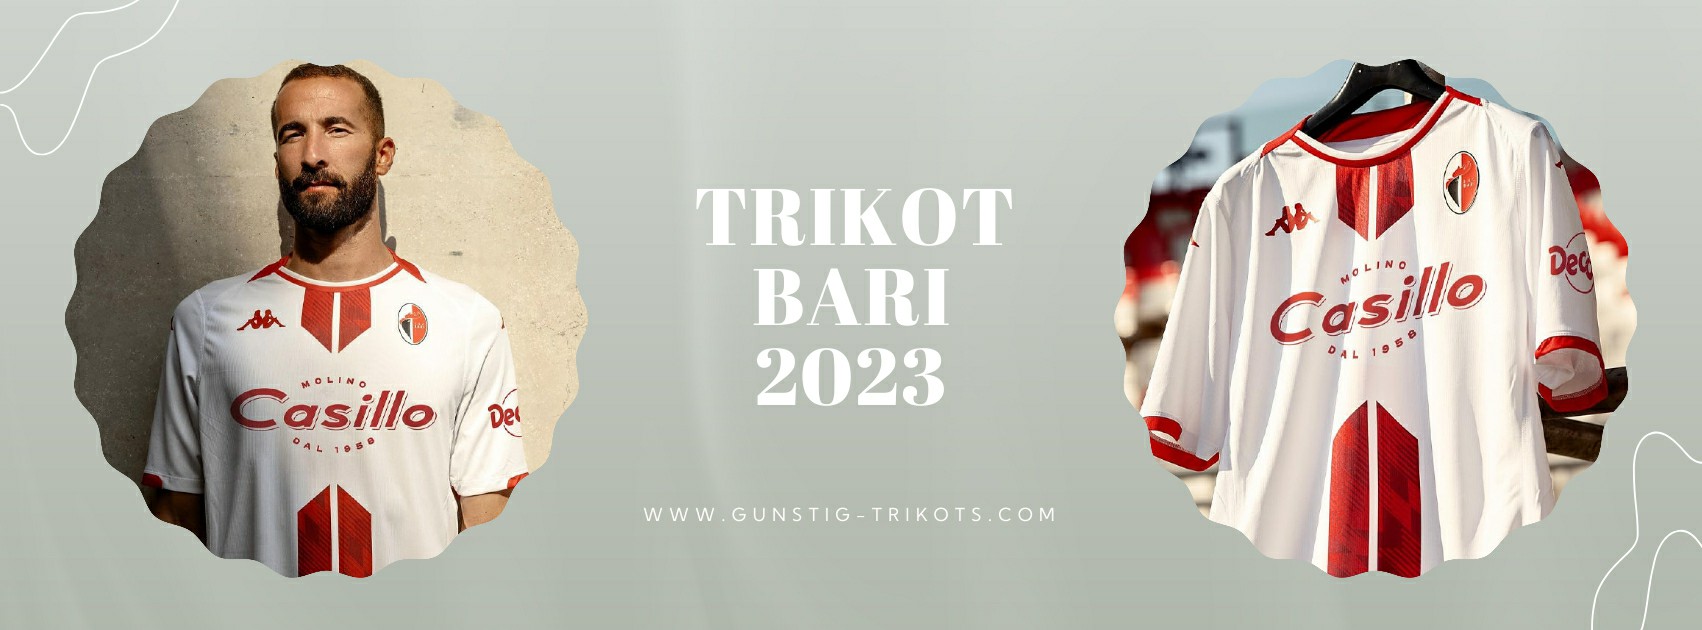 Bari Trikot 2023-2024